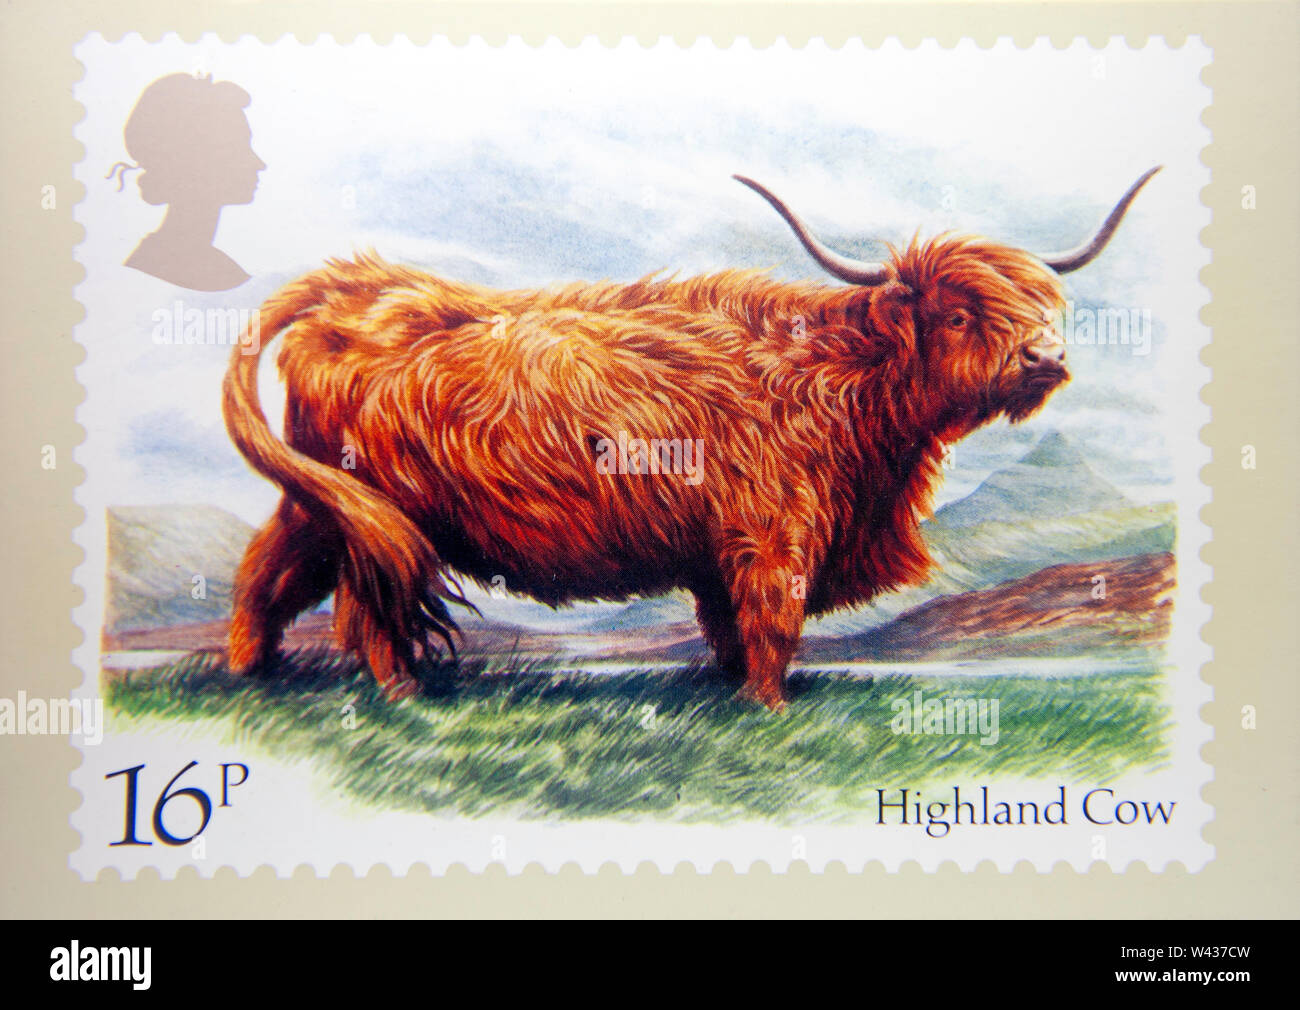 British colecciones de sellos Foto de stock